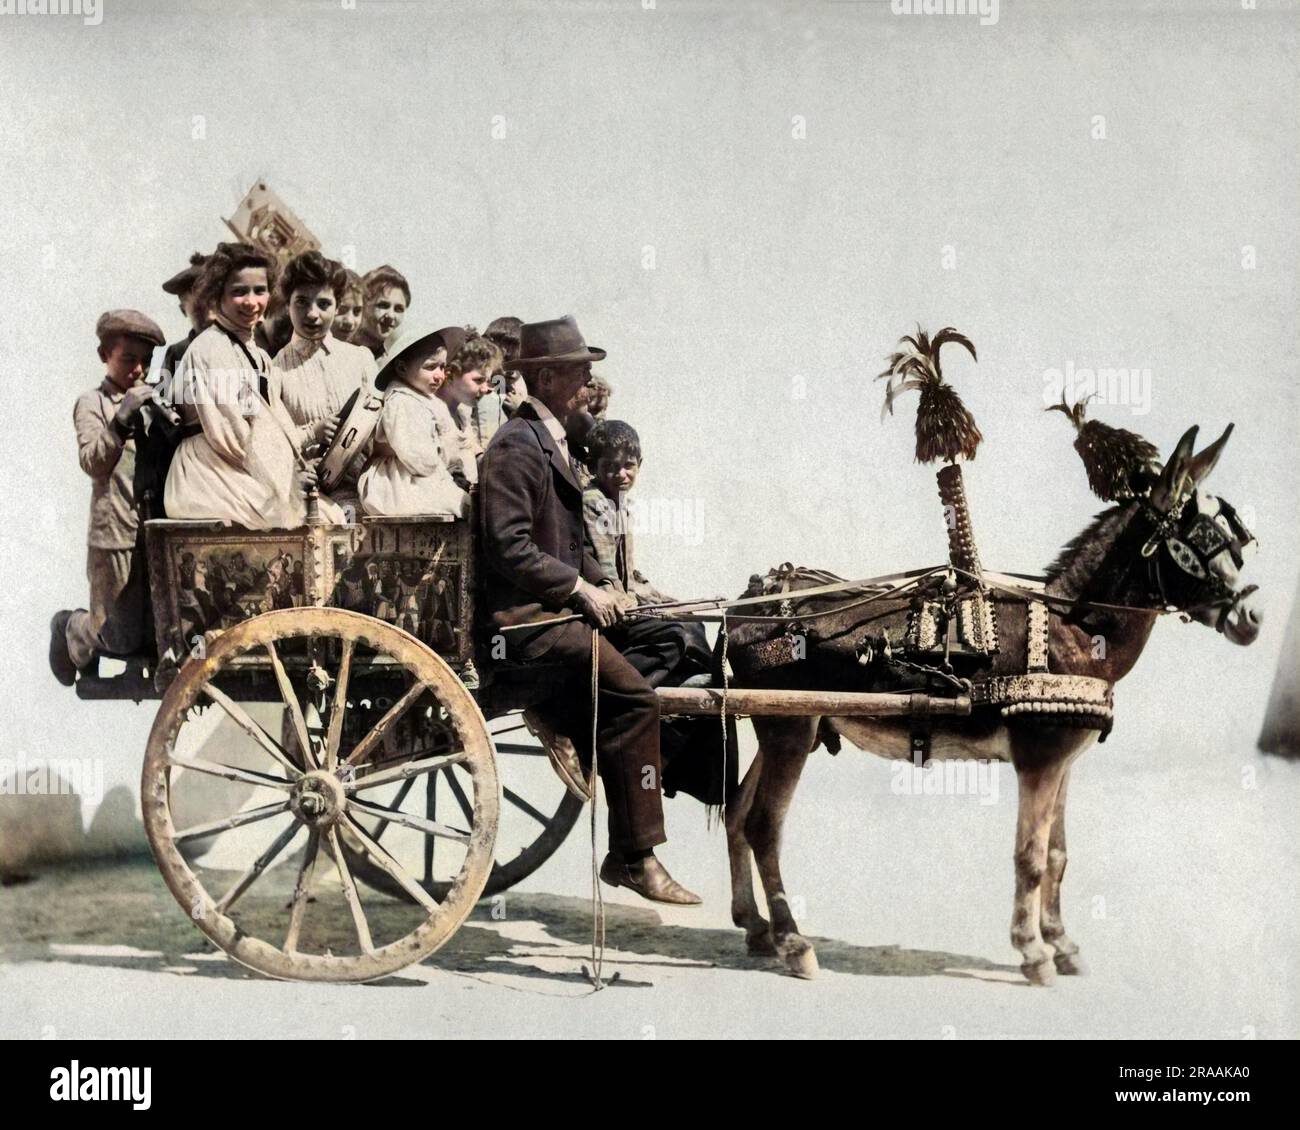 Personnes sur une charrette à âne décorée, Naples, Italie. Date : fin du 19th siècle Banque D'Images